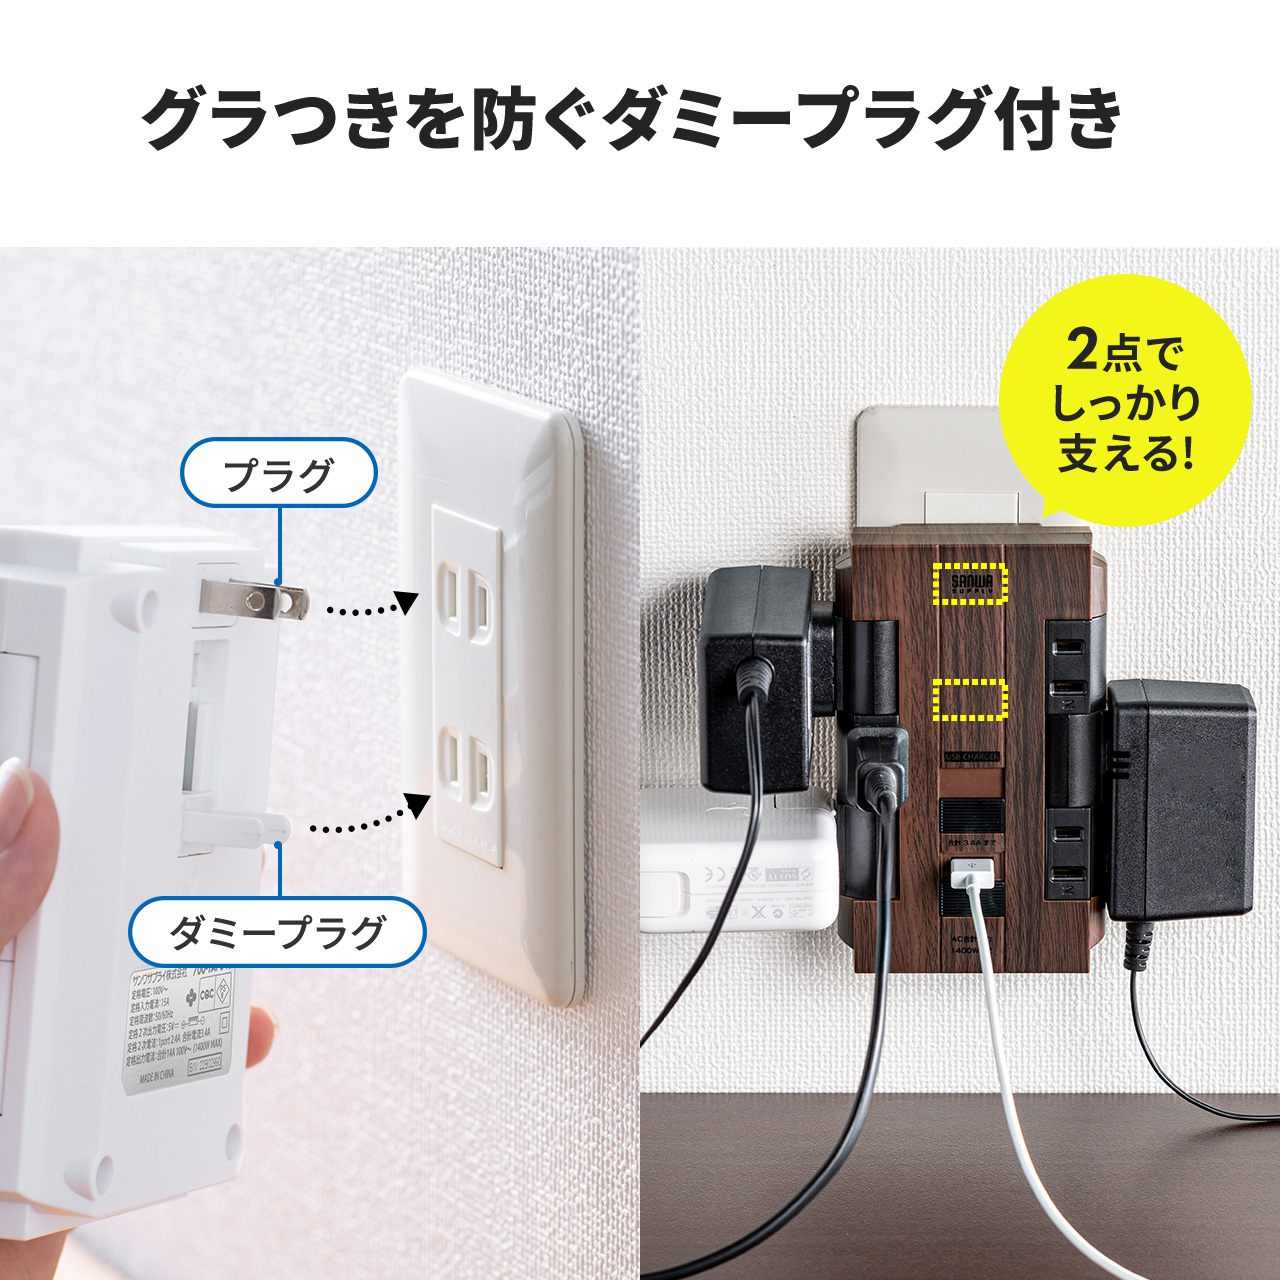 電源タップ 6個口 回転式 2P USB2ポート付  集中スイッチ付 コンセントタップ ホワイト コンパクト 壁面固定 700-TAP046